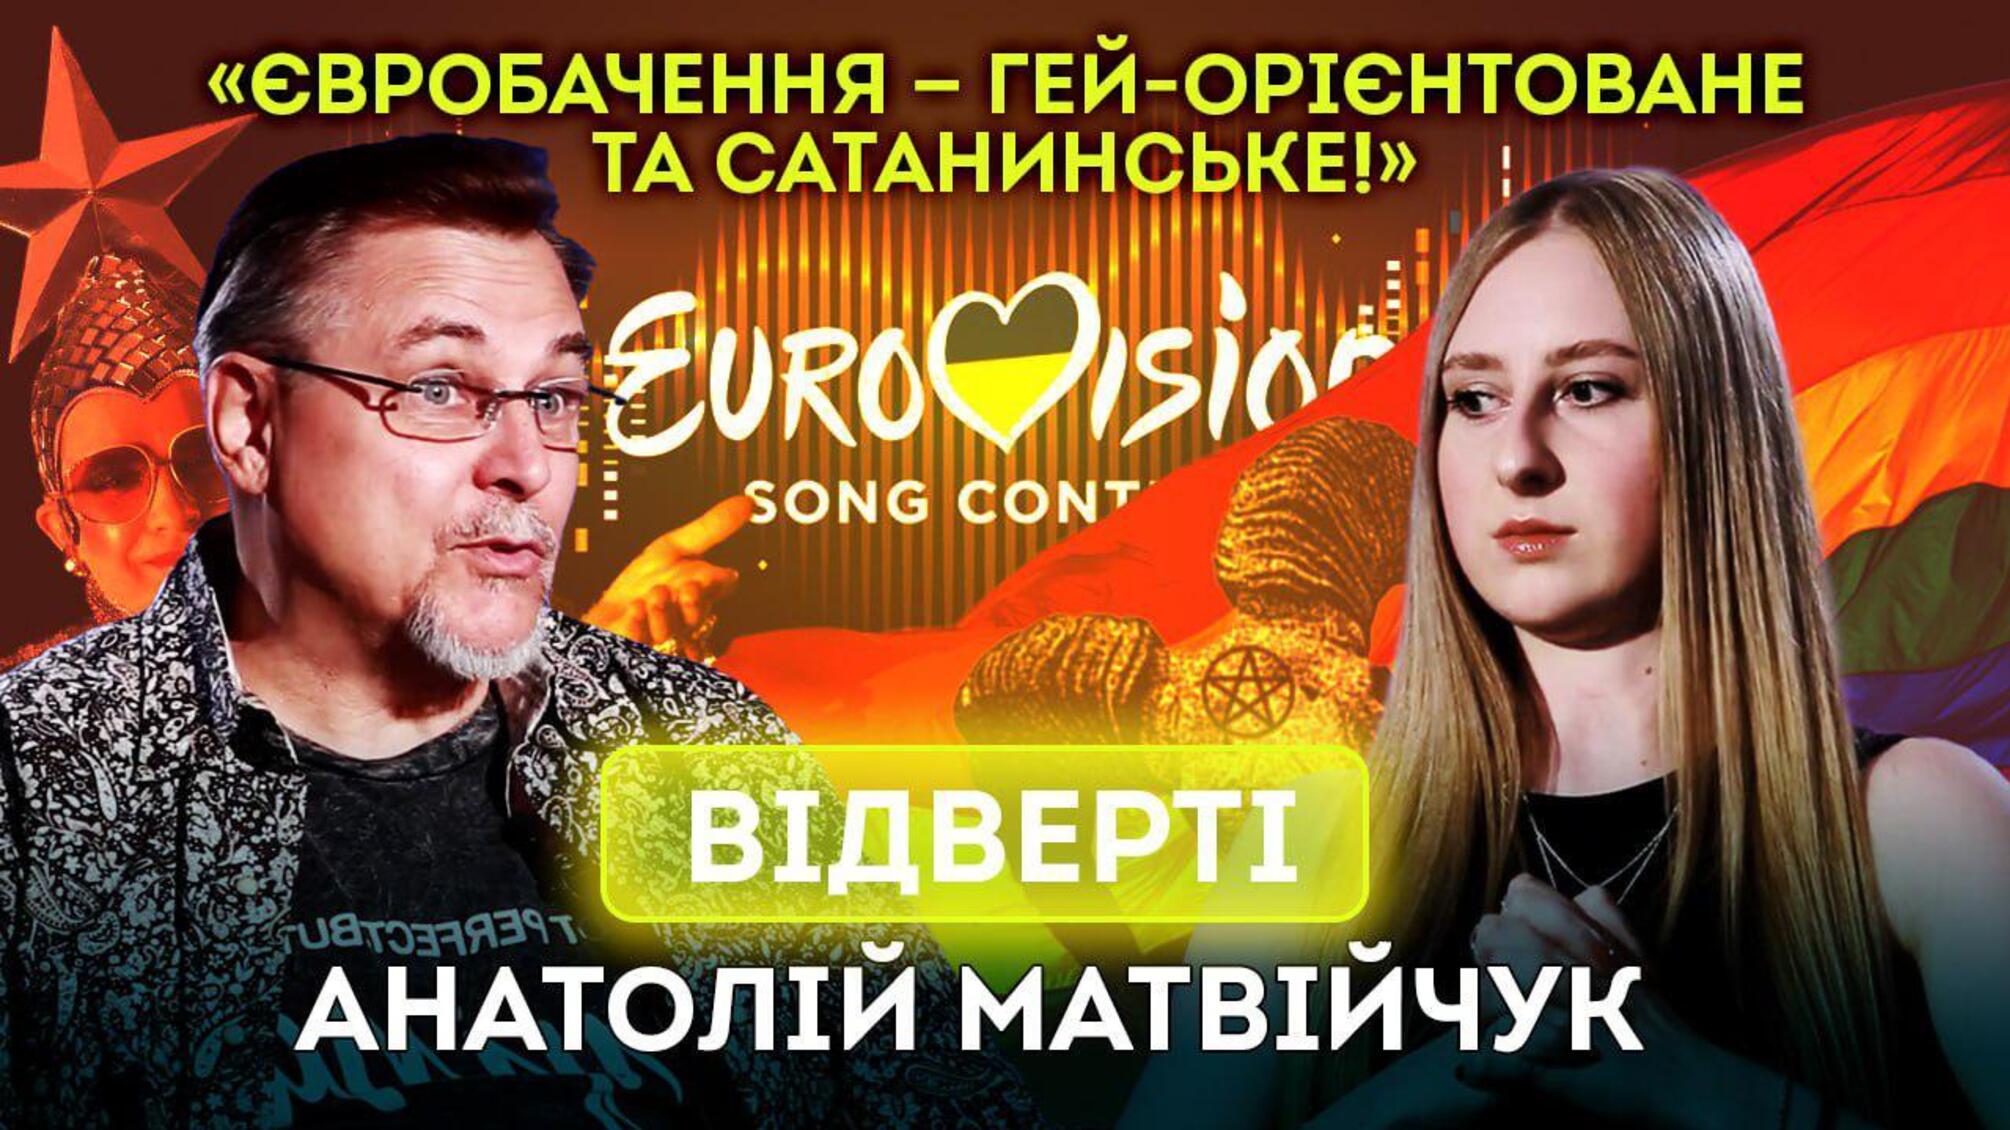 Народный артист Матвийчук - об отношении к ЛГБТК+, Евровидение и творчество (видео)